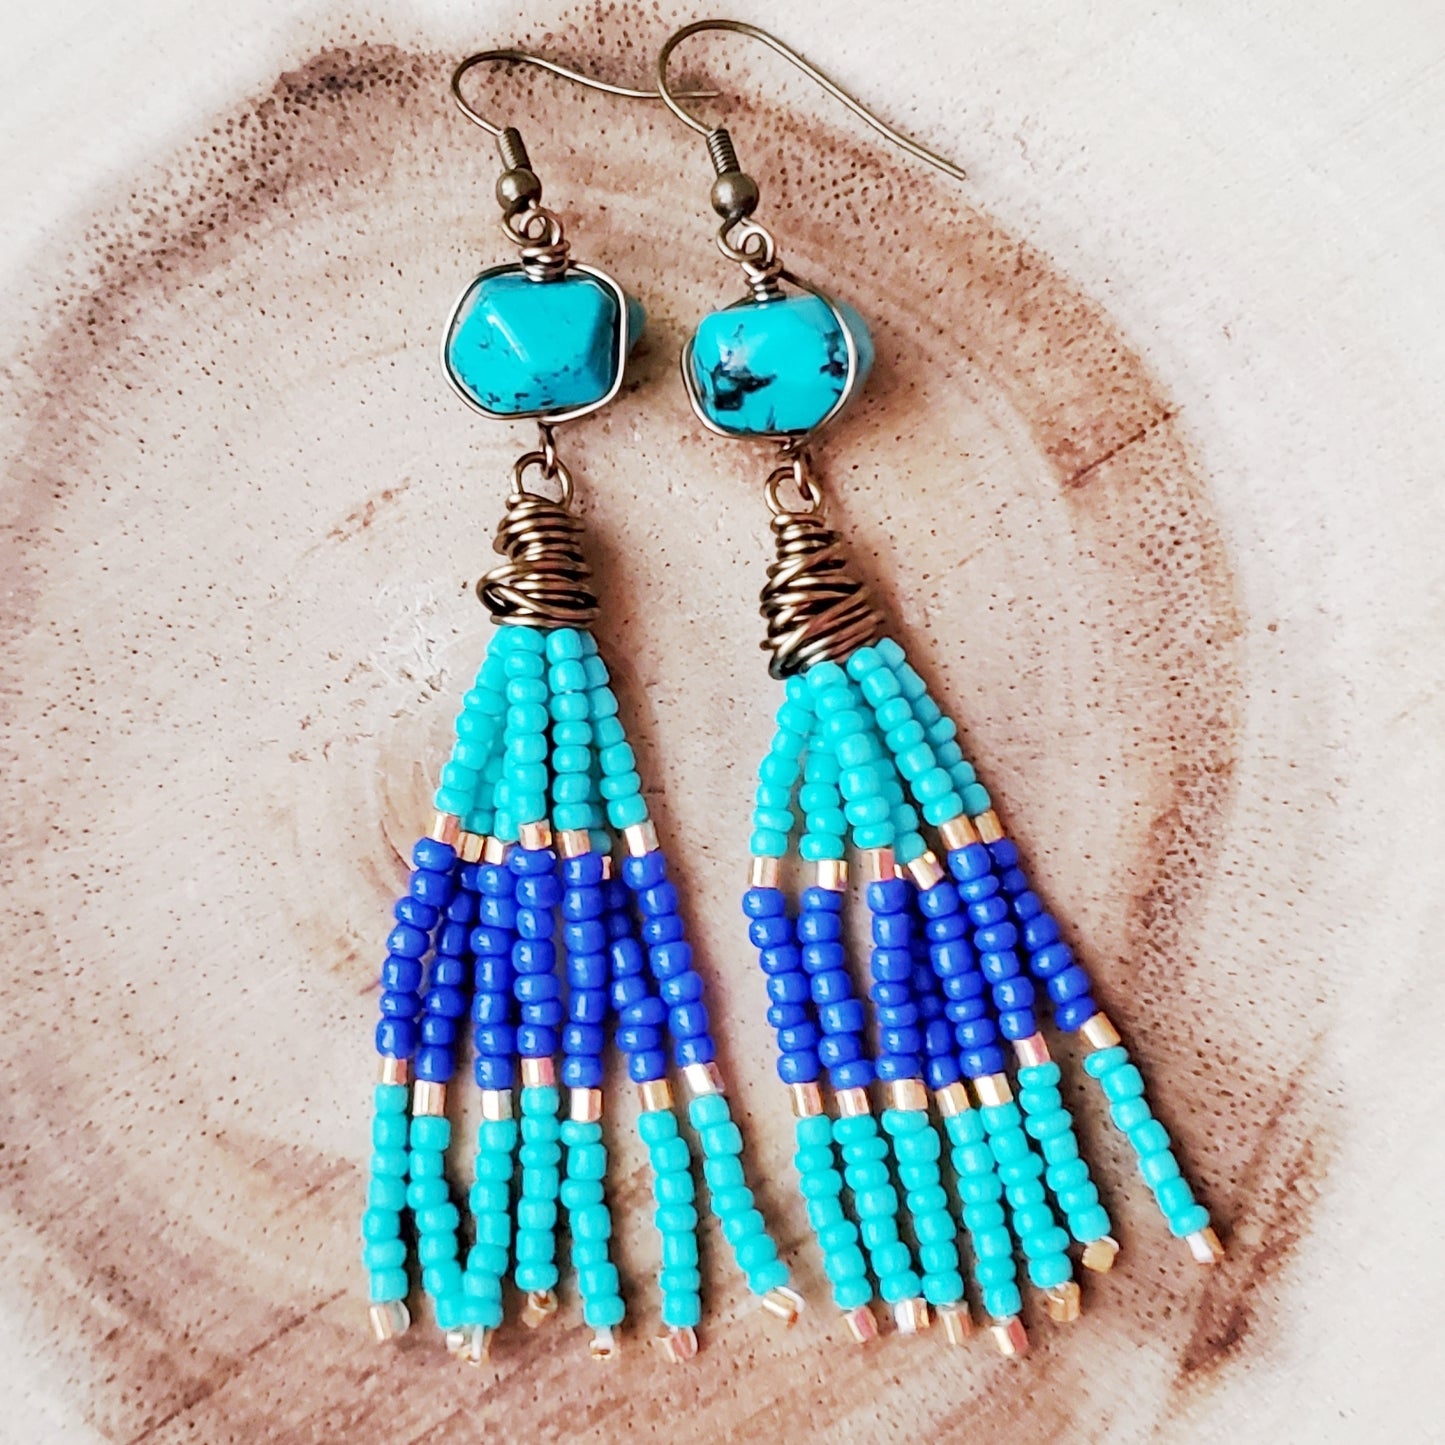 Long Beaded Turquoise Tassel Egyptian Inspired Earrings, One of a Kind Beaded Tassel Earrings